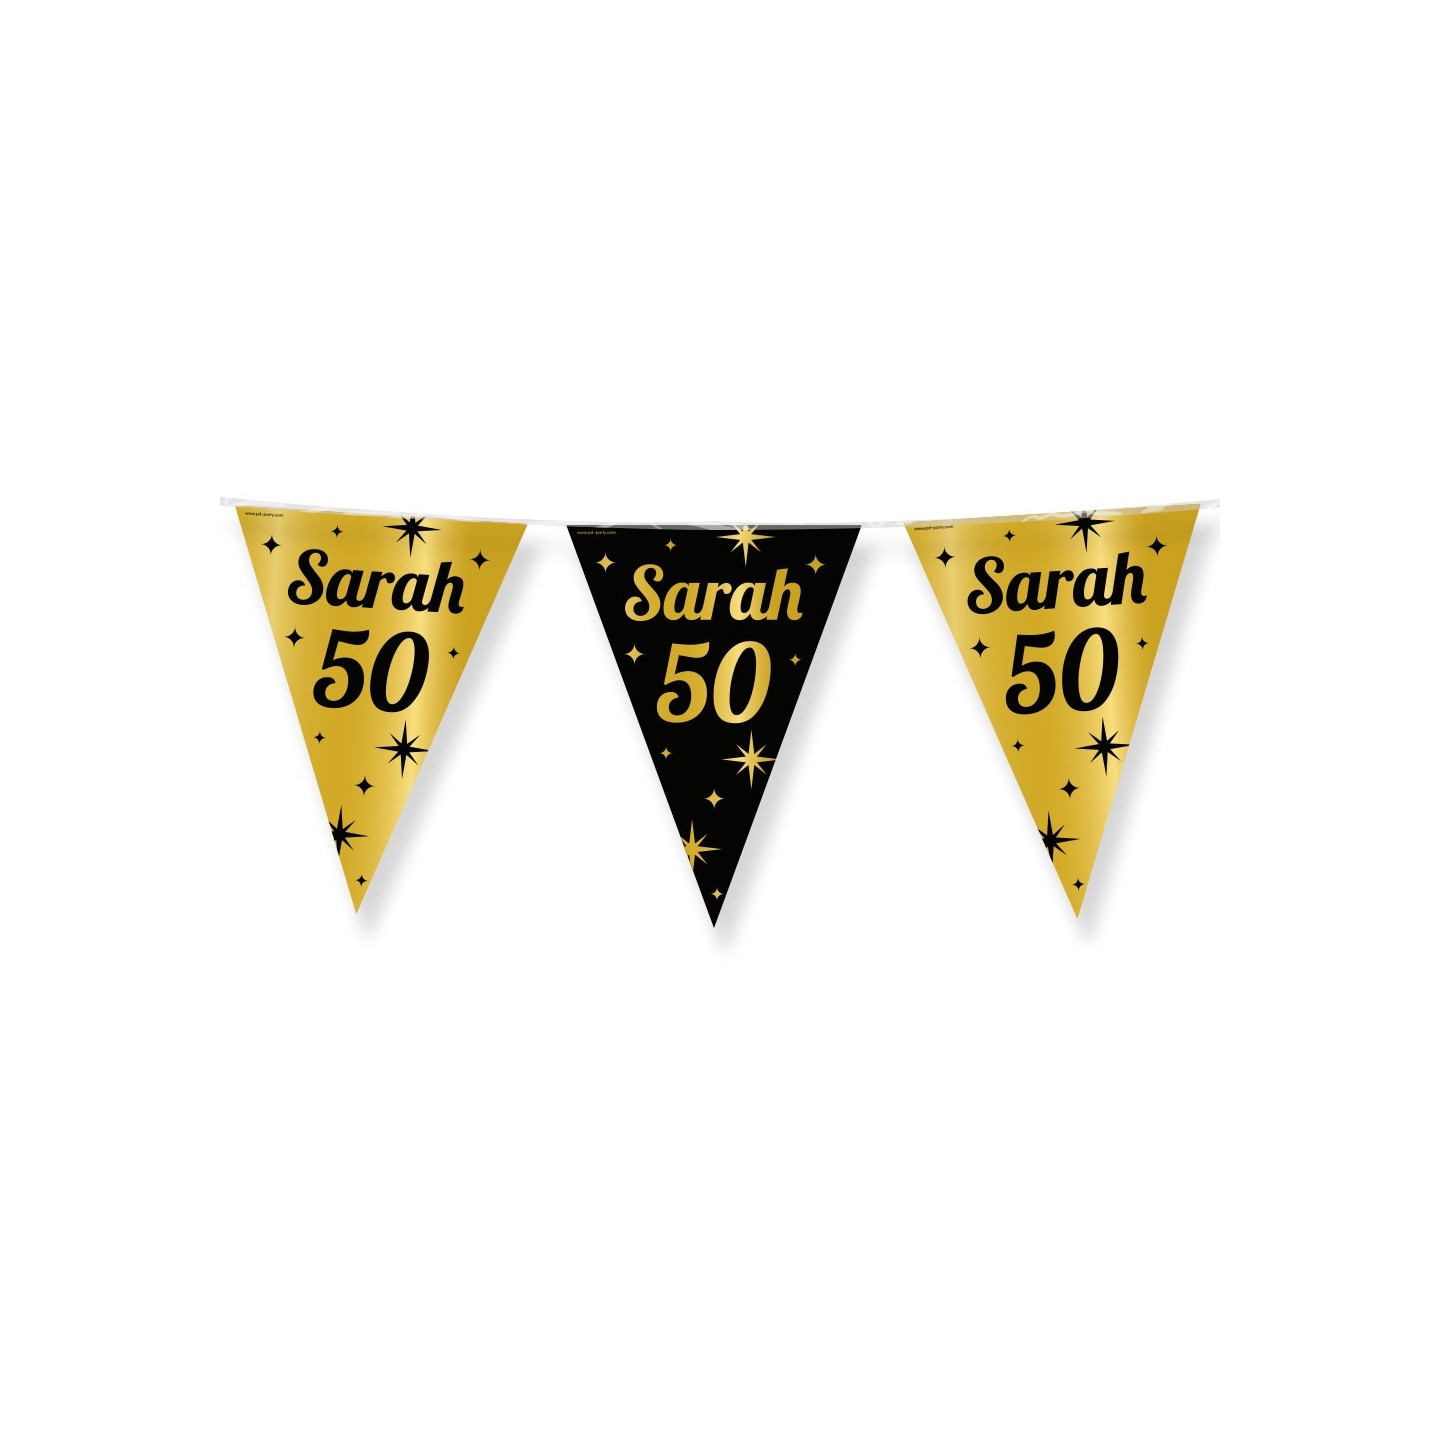 Verjaardag slinger vlaggenlijn Sarah 50 jaar versiering